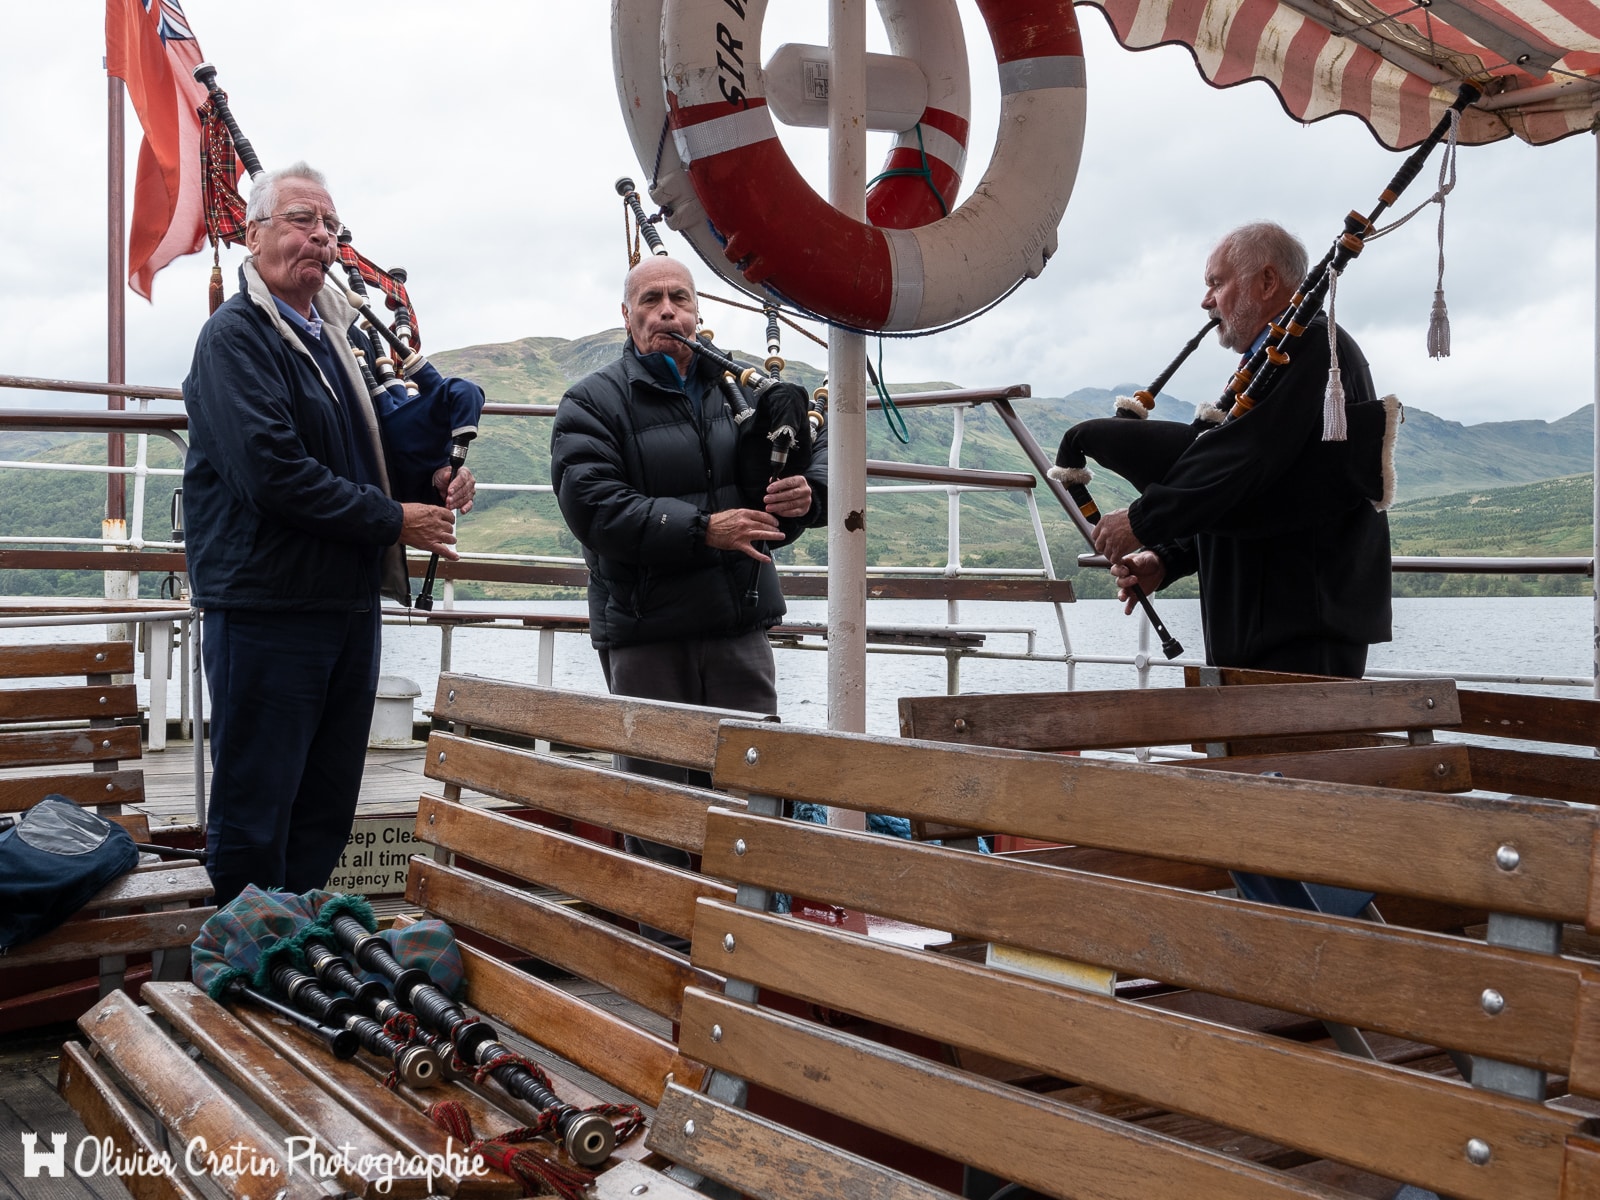 Ecosse - Loch Katrine - Vous êtes coincés sur un bateau, et là, 3 mecs sortent leurs cornemuses...